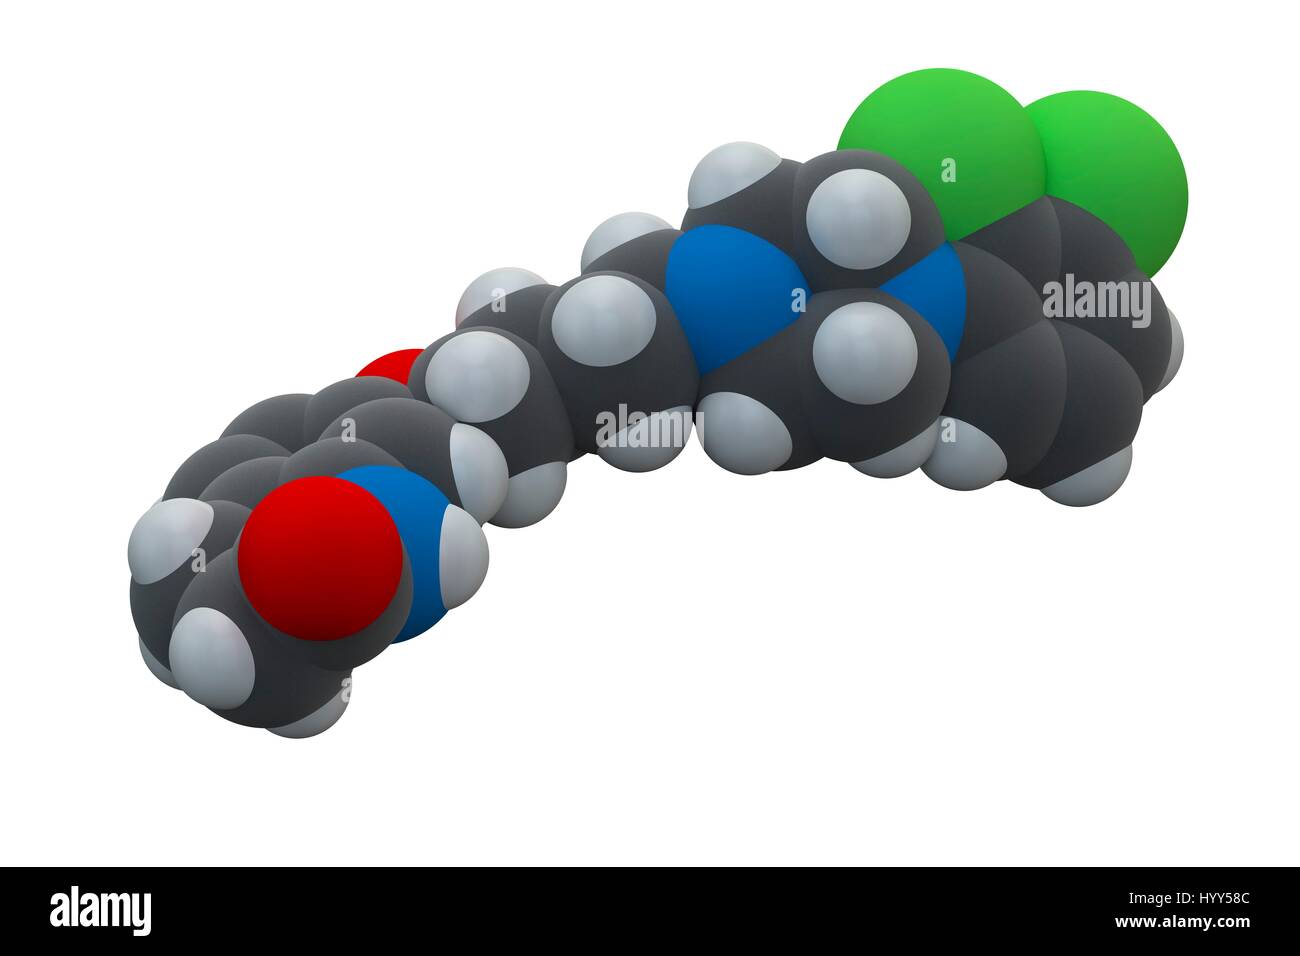 Aripiprazol antipsychotischen Medikamentenmolekül. Chemische Formel ist C23H27Cl2N3O2. Atome werden als Kugeln dargestellt: Kohlenstoff (grau), Wasserstoff (weiß), Chlor (grün), Stickstoff (blau), Sauerstoff (rot). Abbildung. Stockfoto